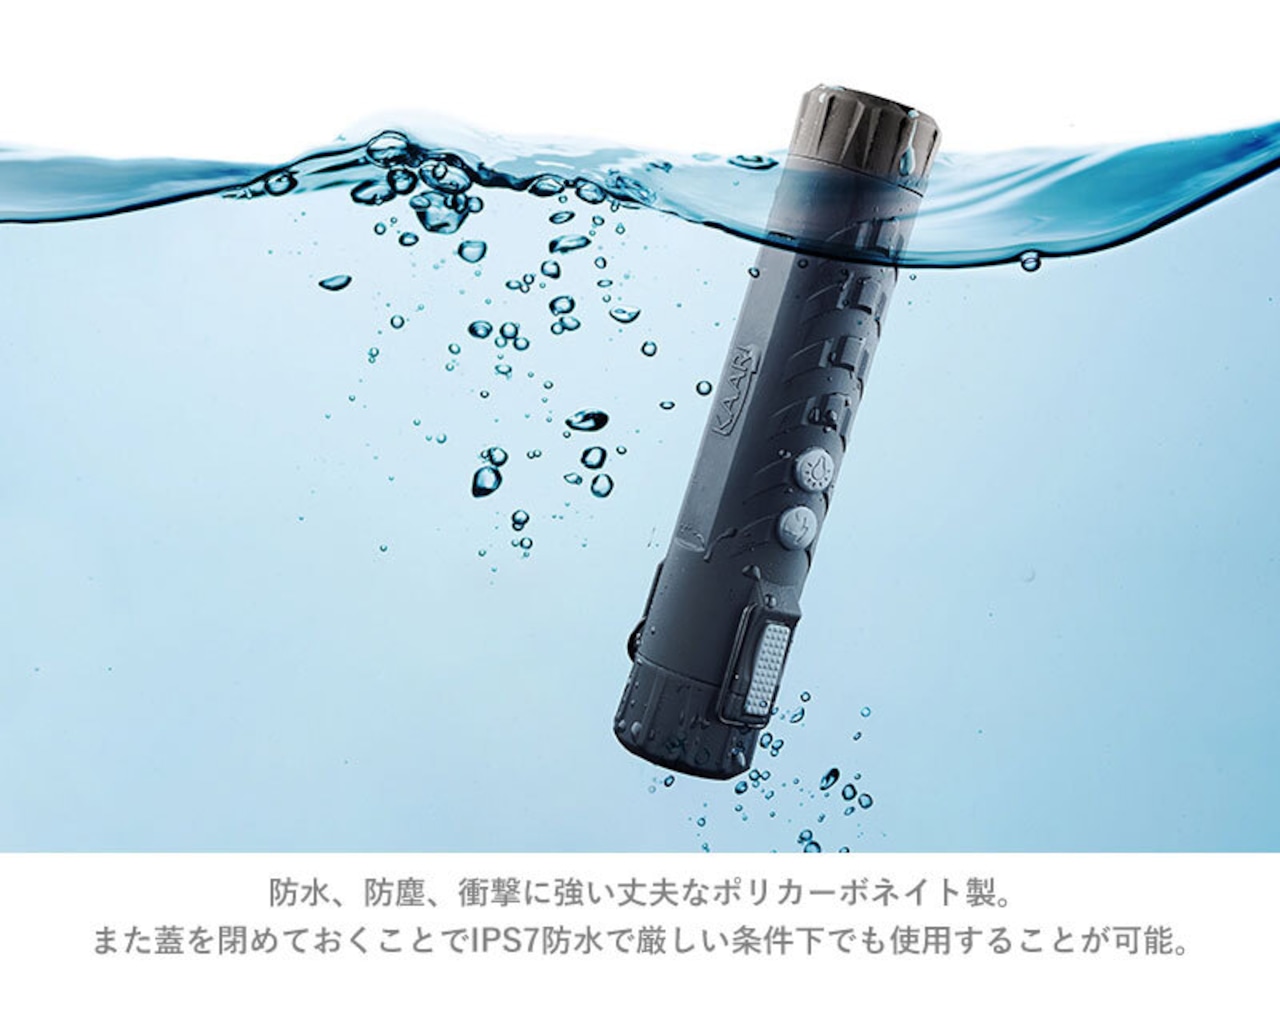 KAARI (カーリ) PLASMA LIGHTER プラズマライター ライター 充電式 USB充電